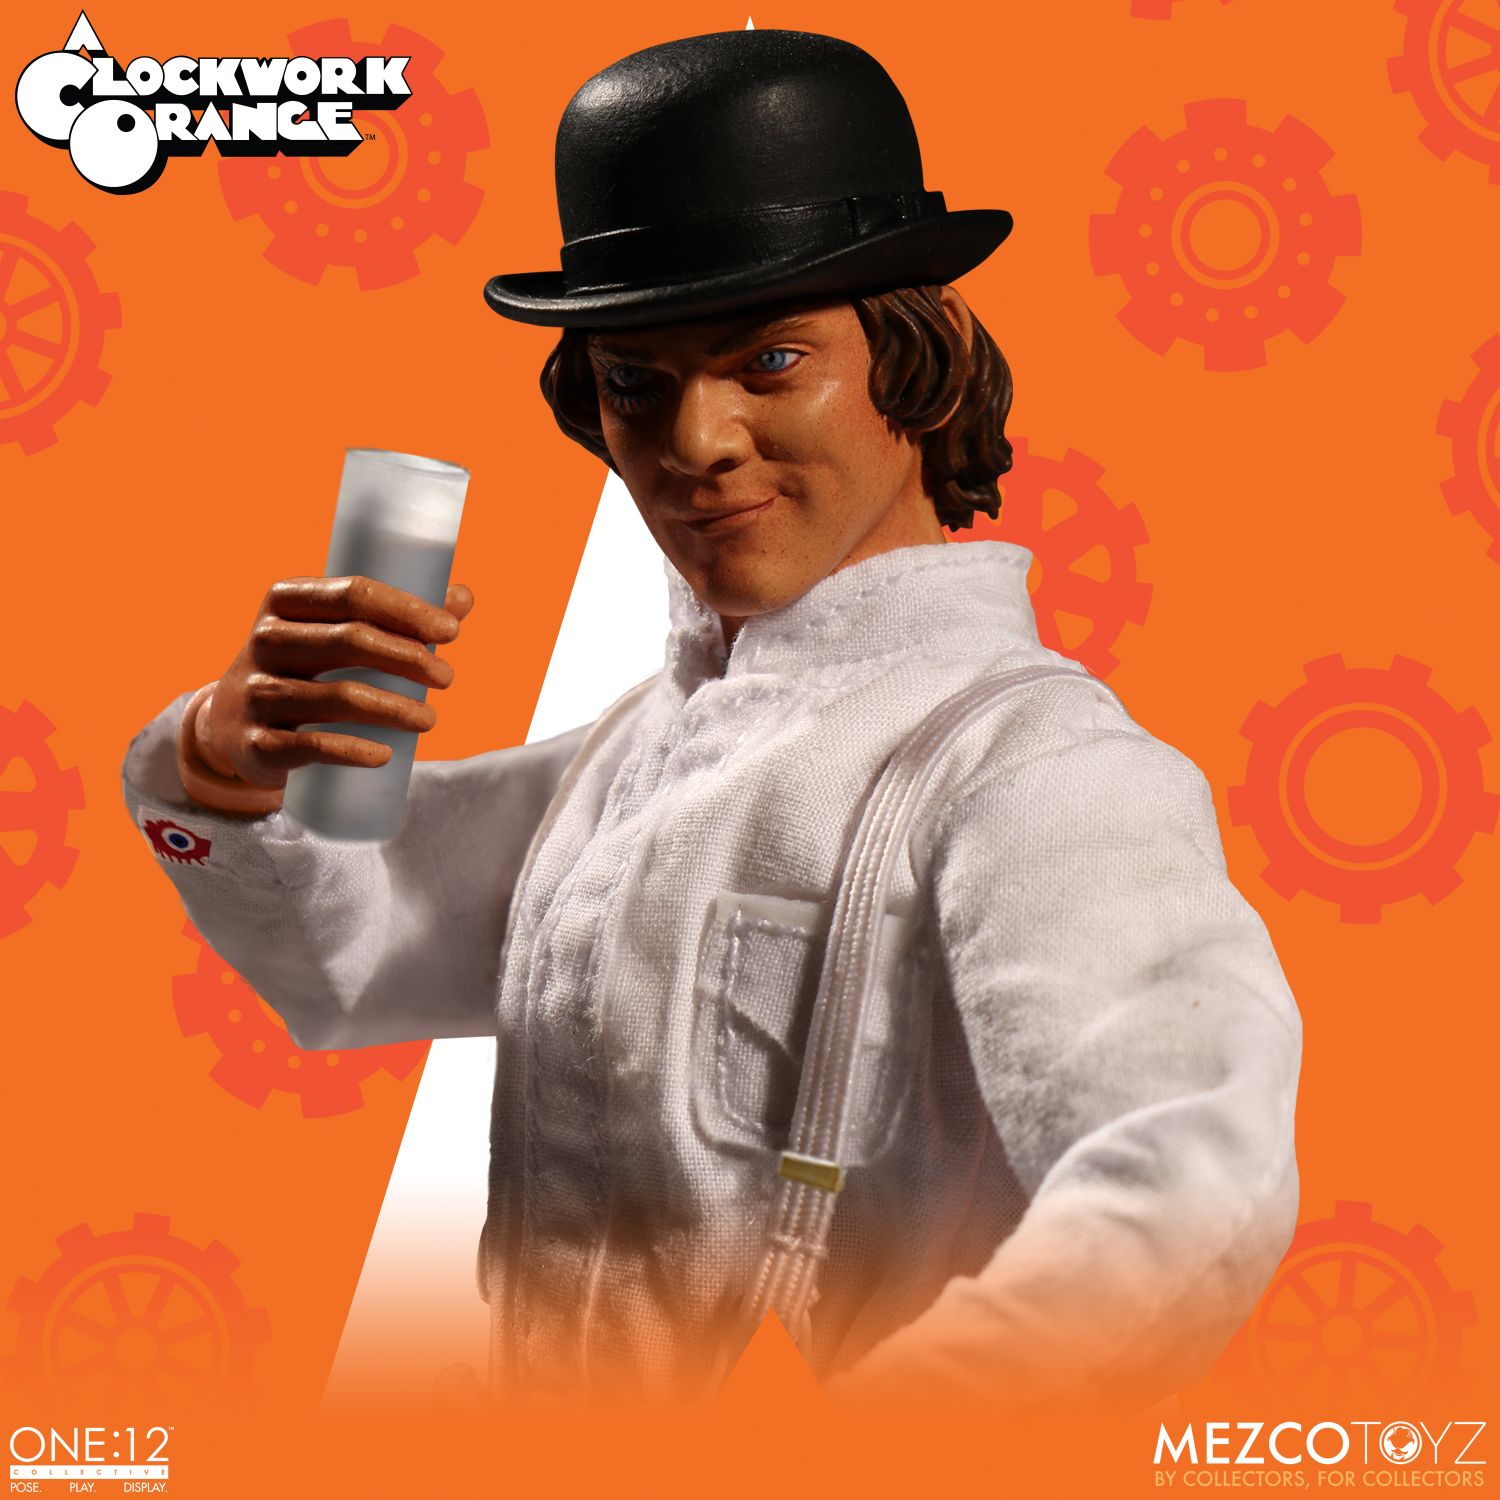 clockwork orange mezco